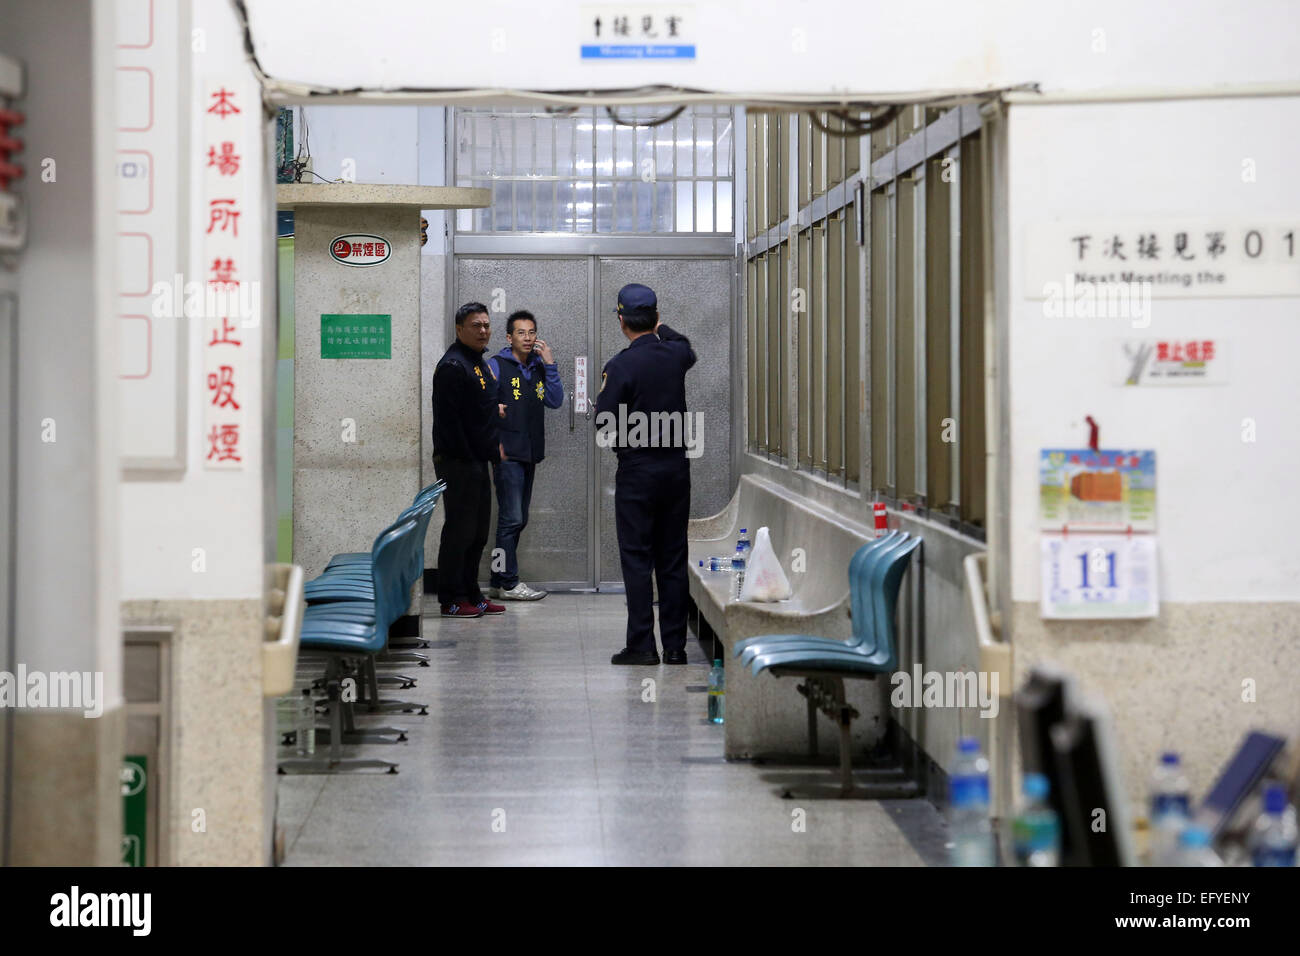 Kaohsiung. 12 Février, 2015. Policiers enquêter sur le suicide de l'emplacement de six détenus à la prison de Kaohsiung à Kaohsiung, Taïwan, du sud-est de la Chine, 12 février 2015. Six détenus exerçant son courtes et longues qui ont pris des otages à la prison de Kaohsiung tués eux-mêmes tôt jeudi matin, mettant fin à près de 14 heures de face avec la police. Les deux otages, y compris gardien de prison Chen Shih-chih et garde en chef Wang Shih-Tsang ont été à la fois sûr, ont dit. Source : Xinhua/Alamy Live News Banque D'Images